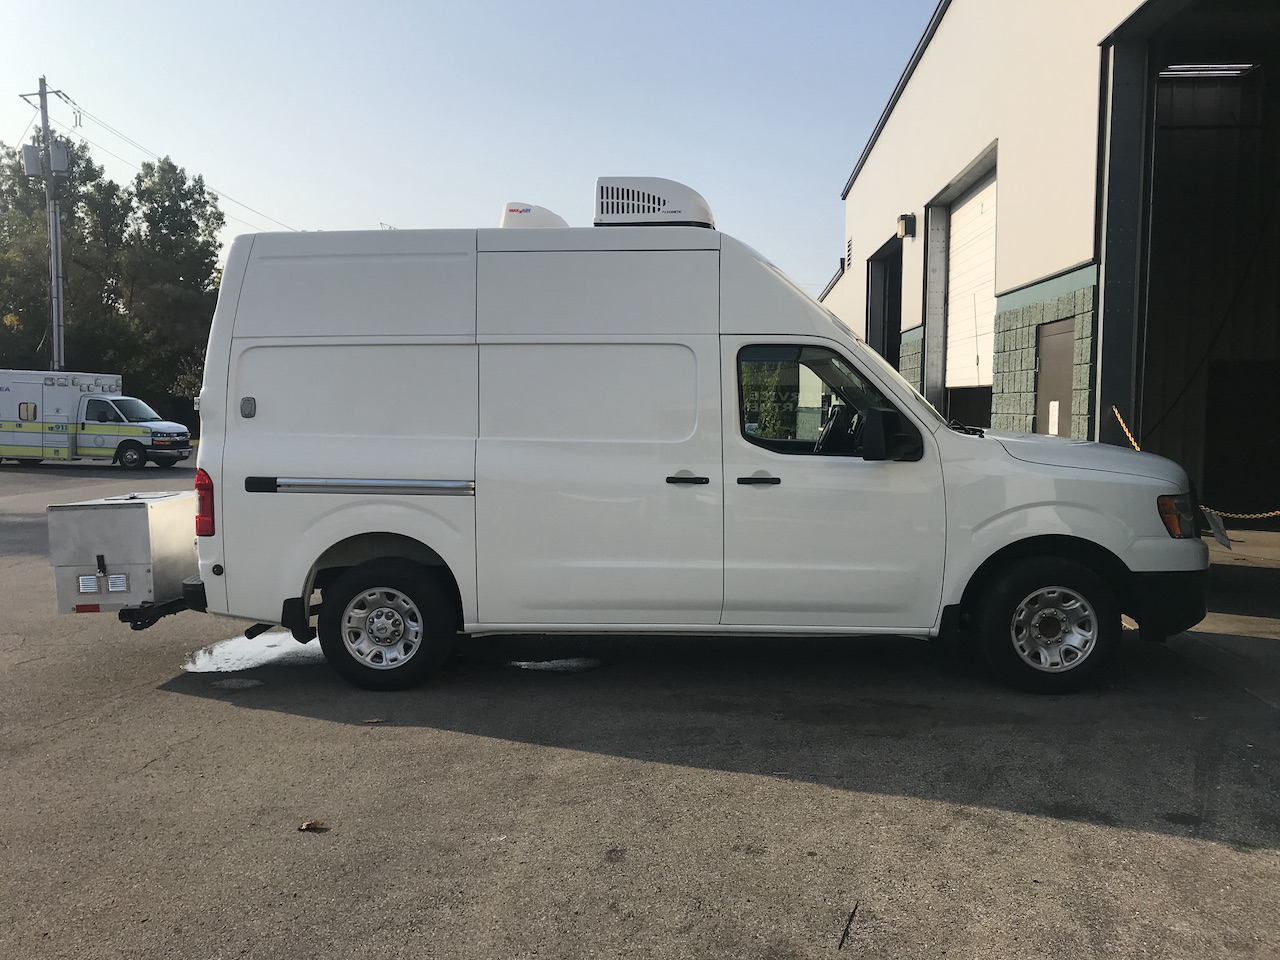 Mobile-Dog-Grooming-Van-48